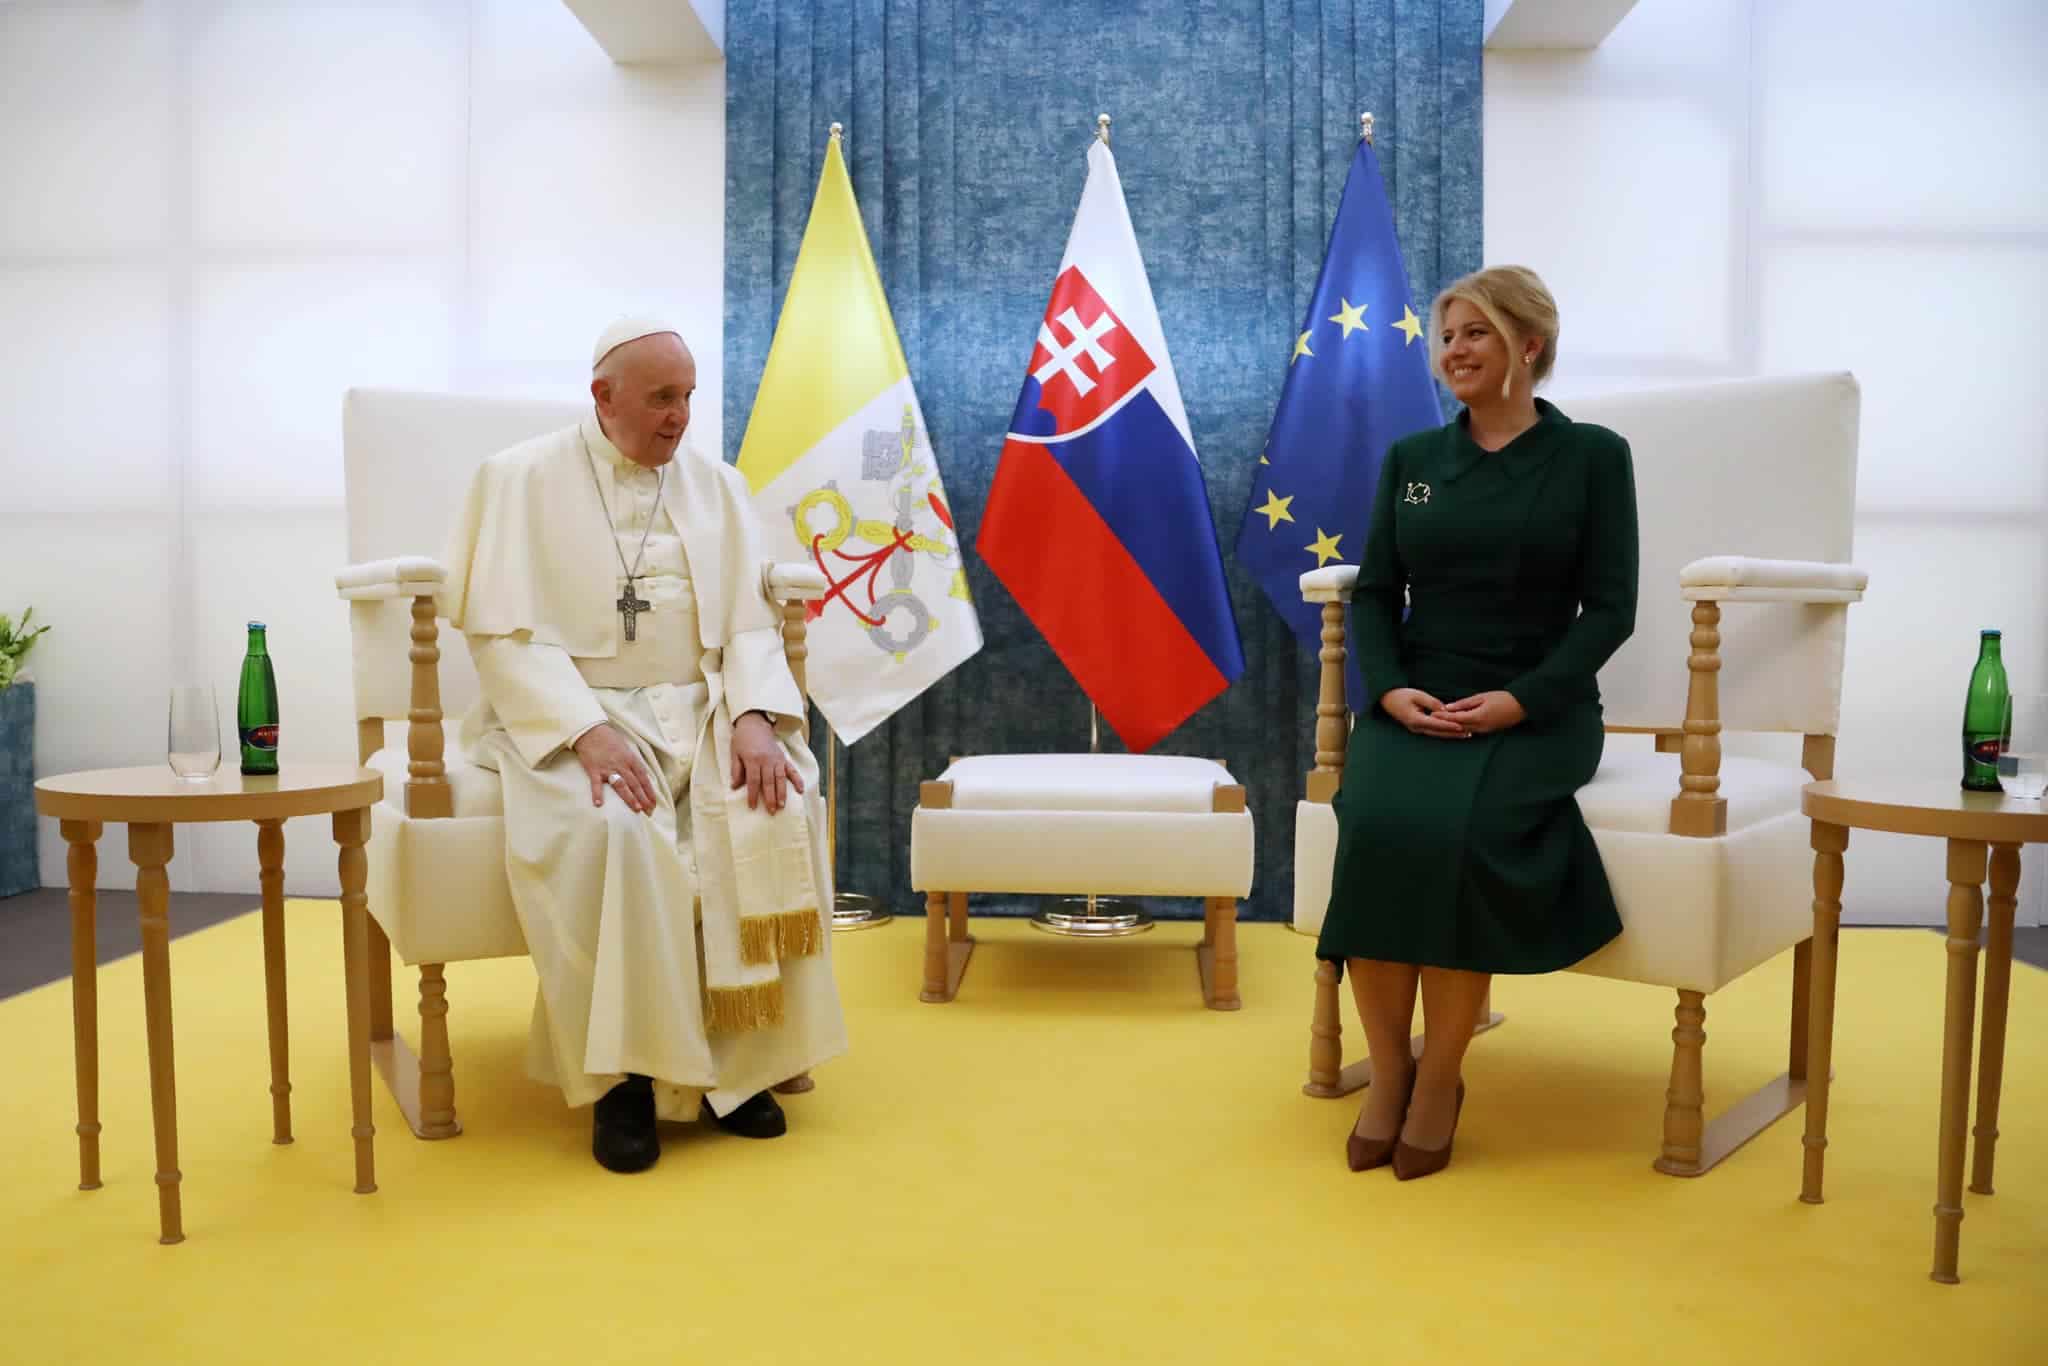 La presidenta eslovaca con el Papa en la Nunciatura de Bratislava